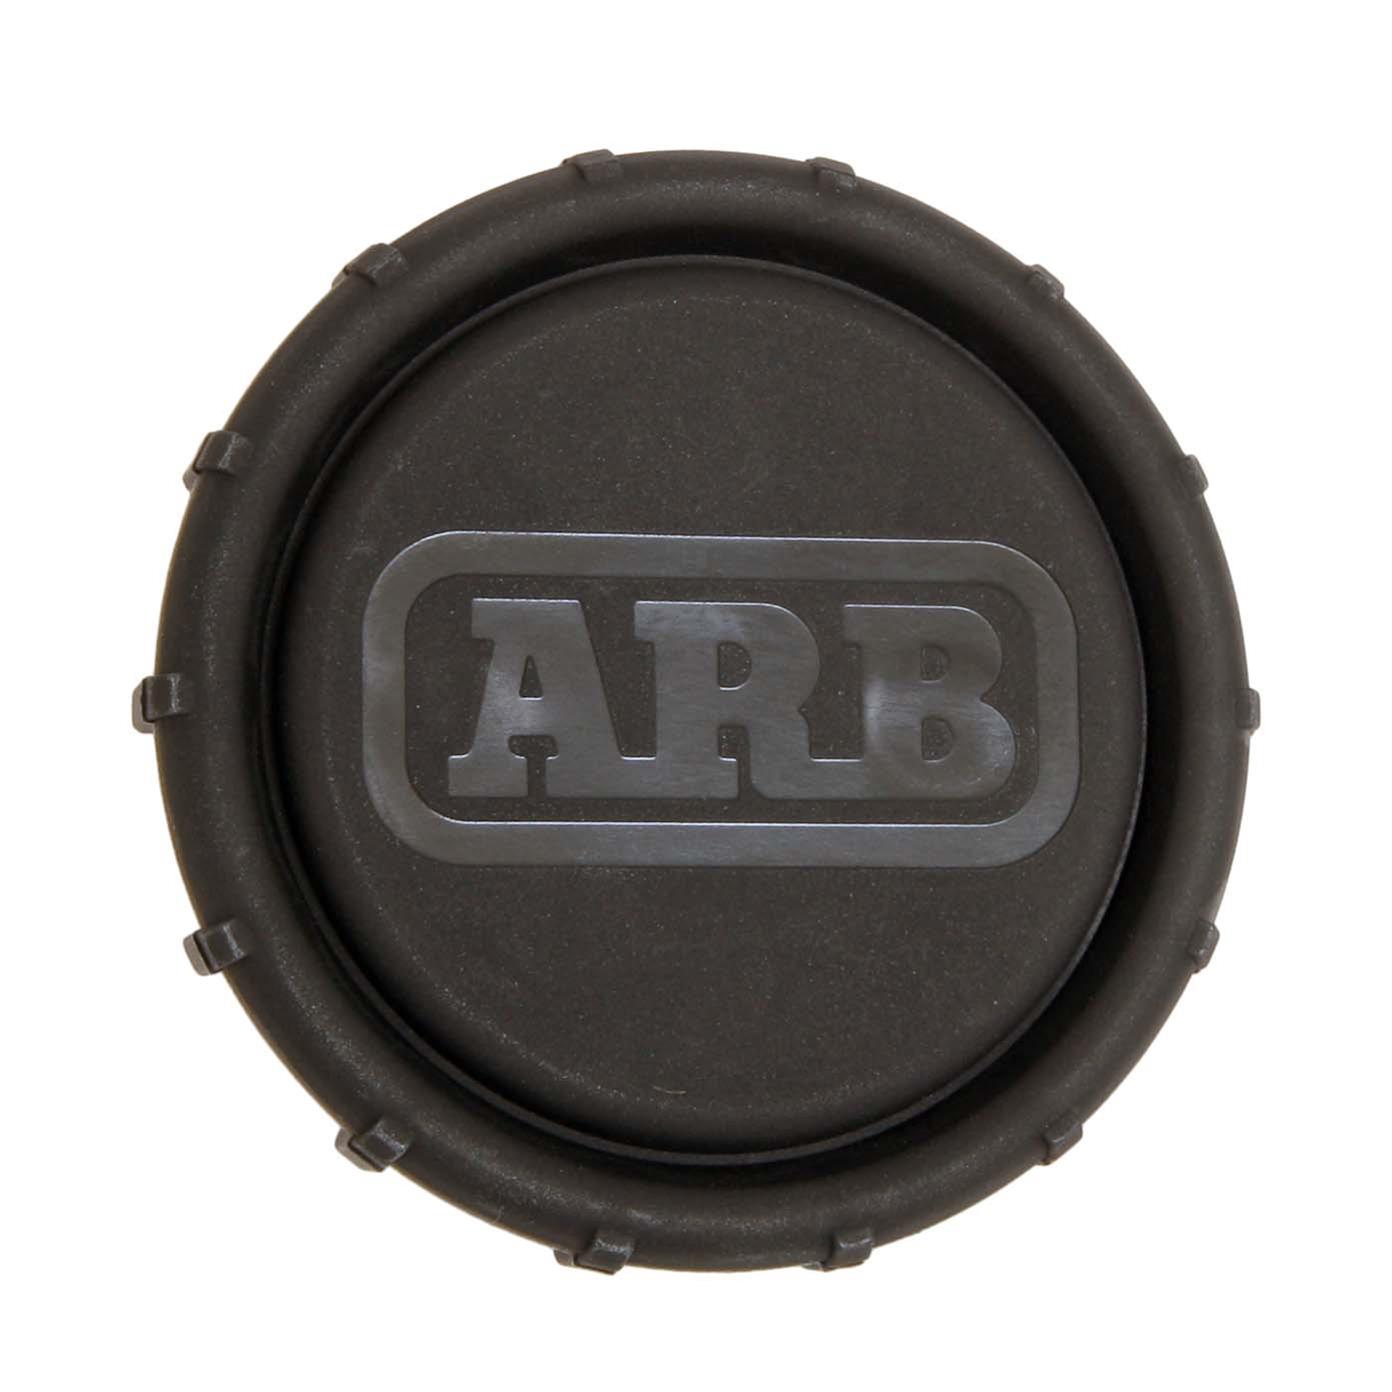 arb air compressor